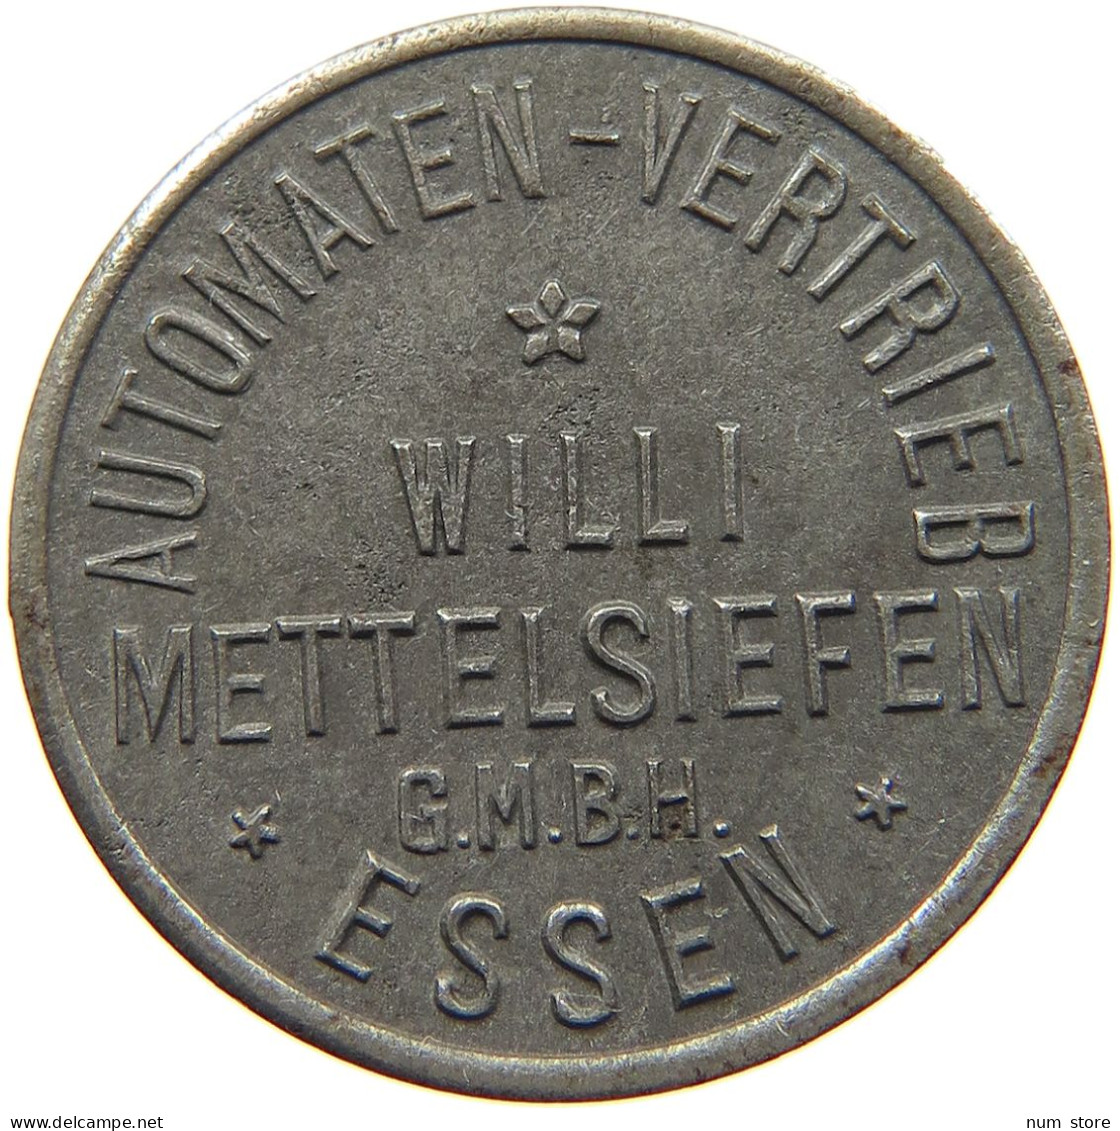 GERMANY NOTGELD WERT-MARKE ESSEN Willi Mettelsiefen GMBH #s088 0287 - Monetary/Of Necessity